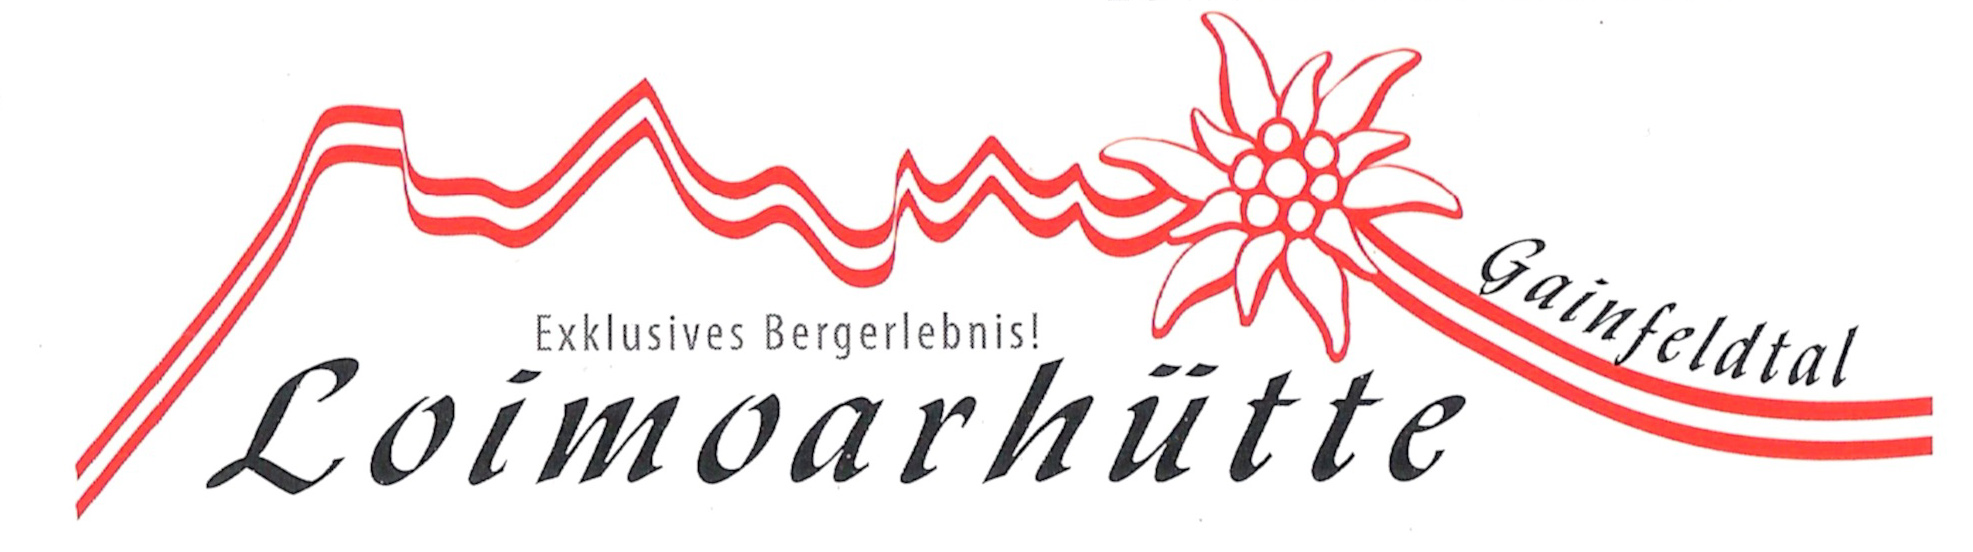 Loimoarhütte – Gainfeld – Bischofshofen – Salzburg